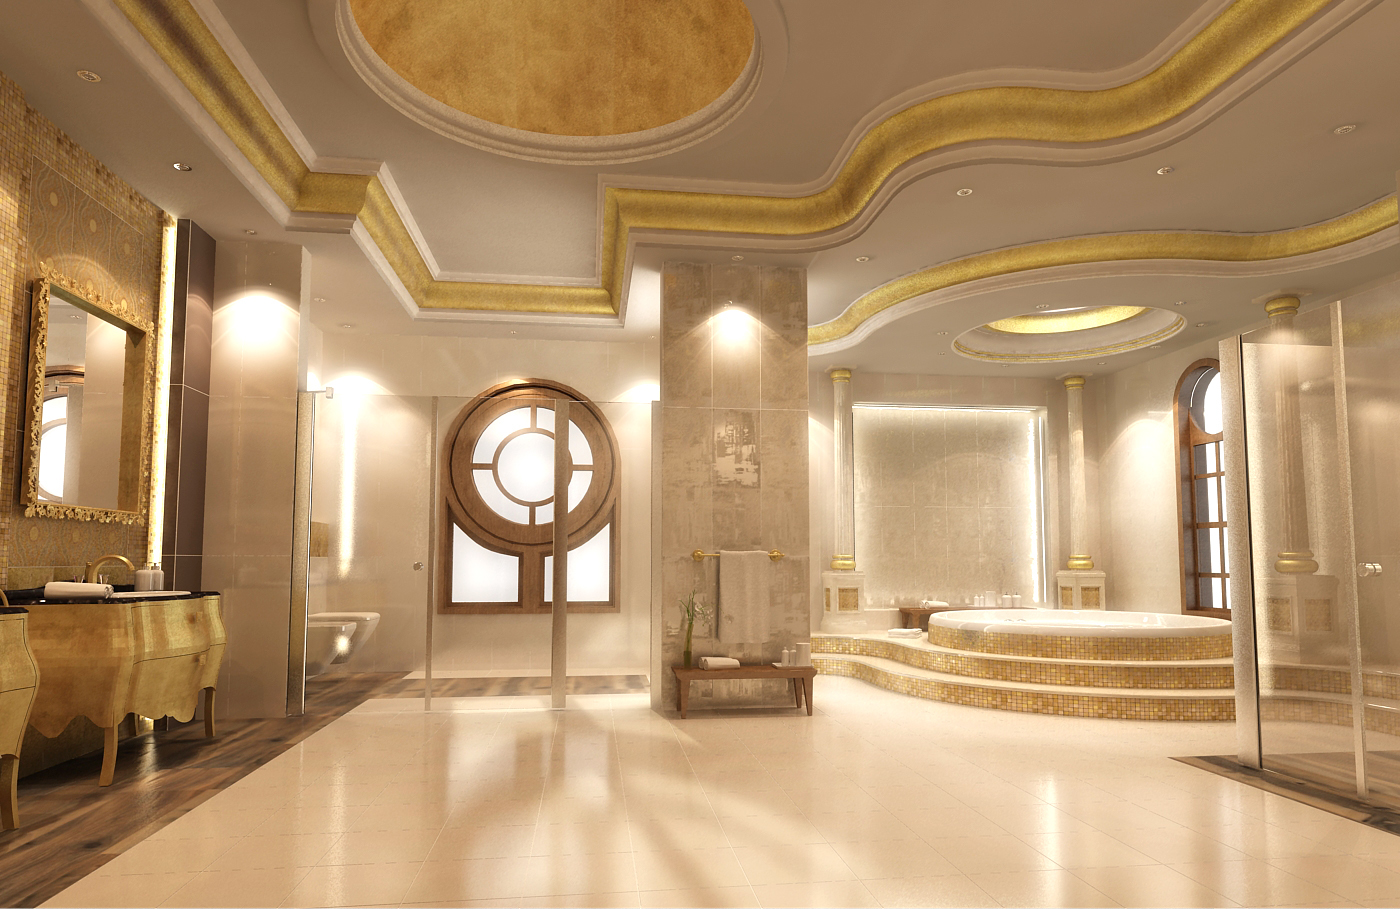 Interior_Design_Rich_Bathroom on Behance